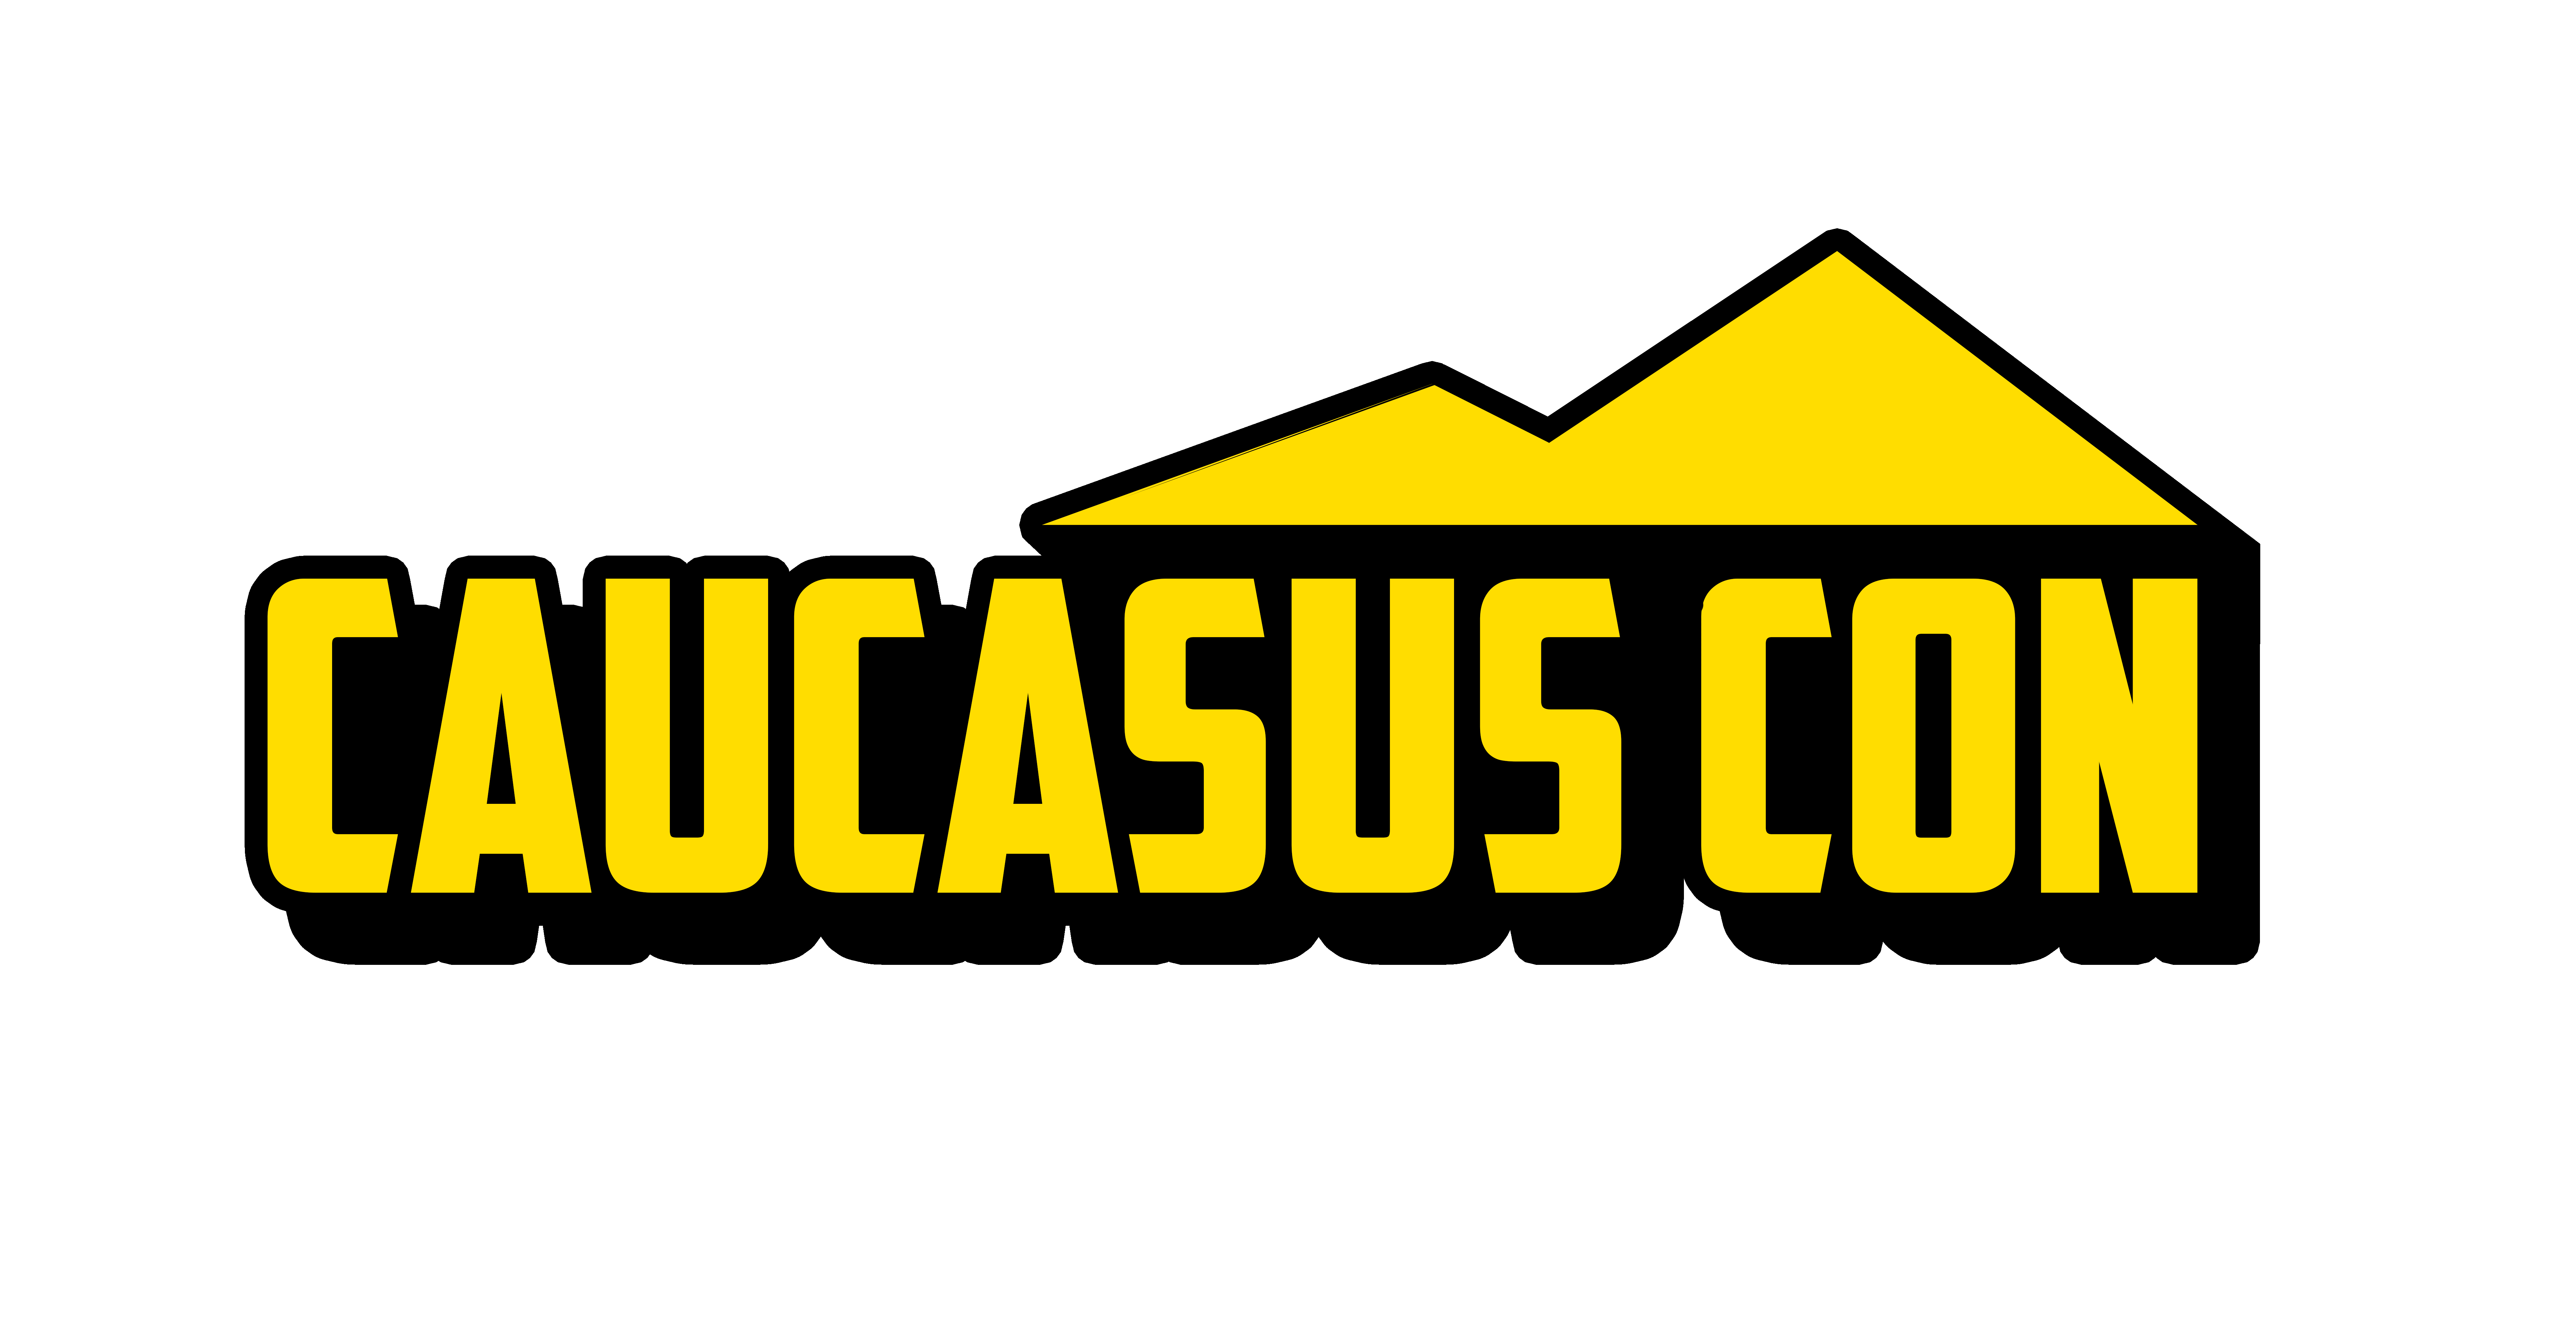 2-4 ნოემბერს პოპ-კულტურისა და ტექნოლოგიების ფესტივალი CAUCASUS  CON გაიმართება